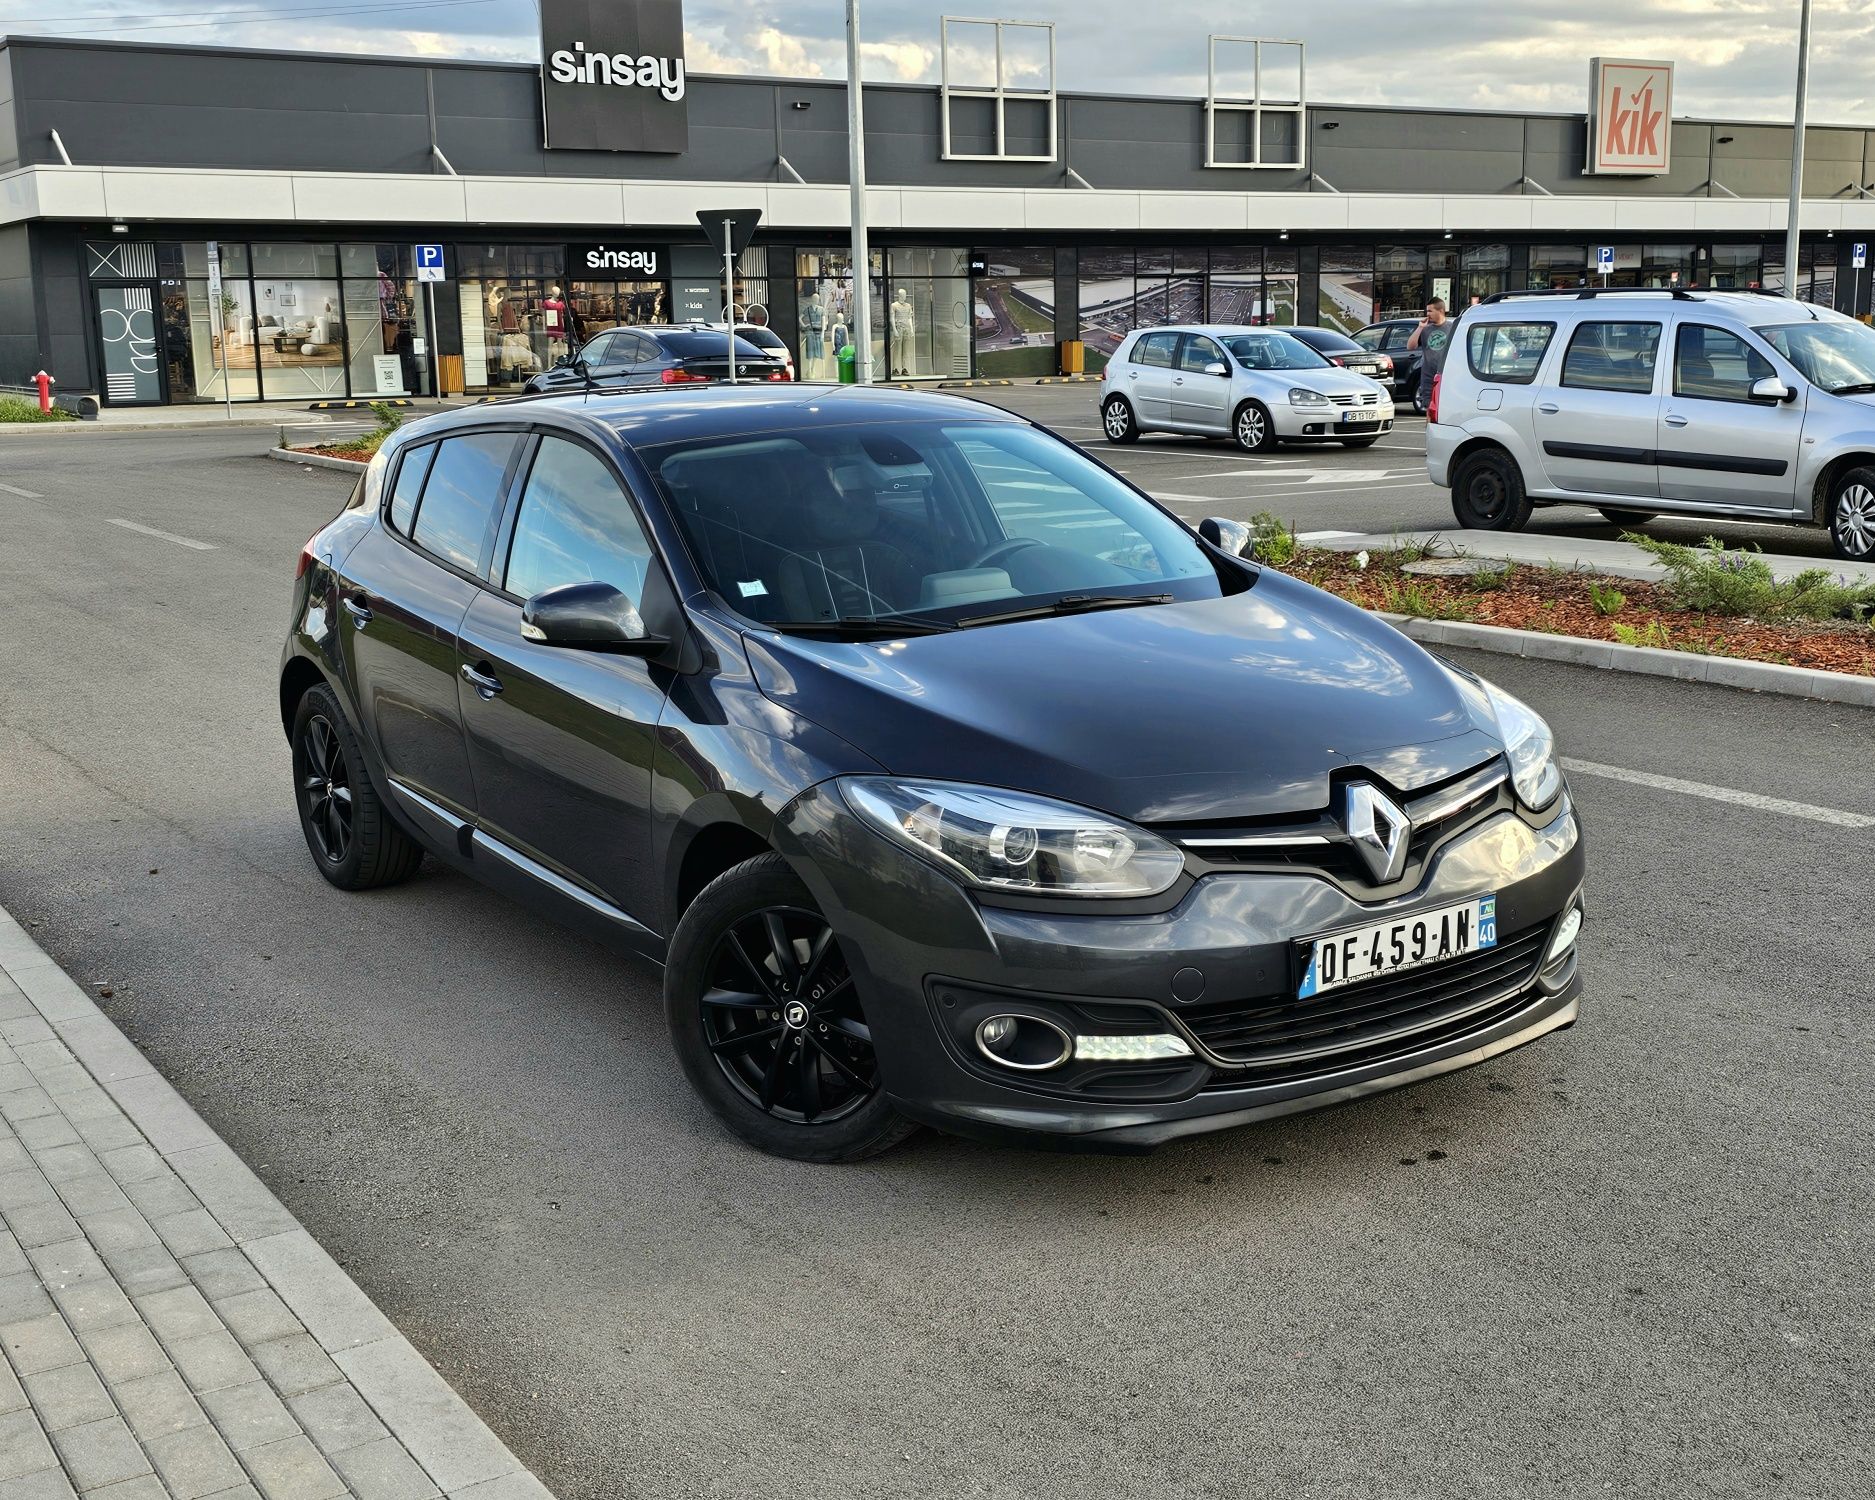 Renault Megane 2014 - 1.5 dci 110 cp - Euro 5